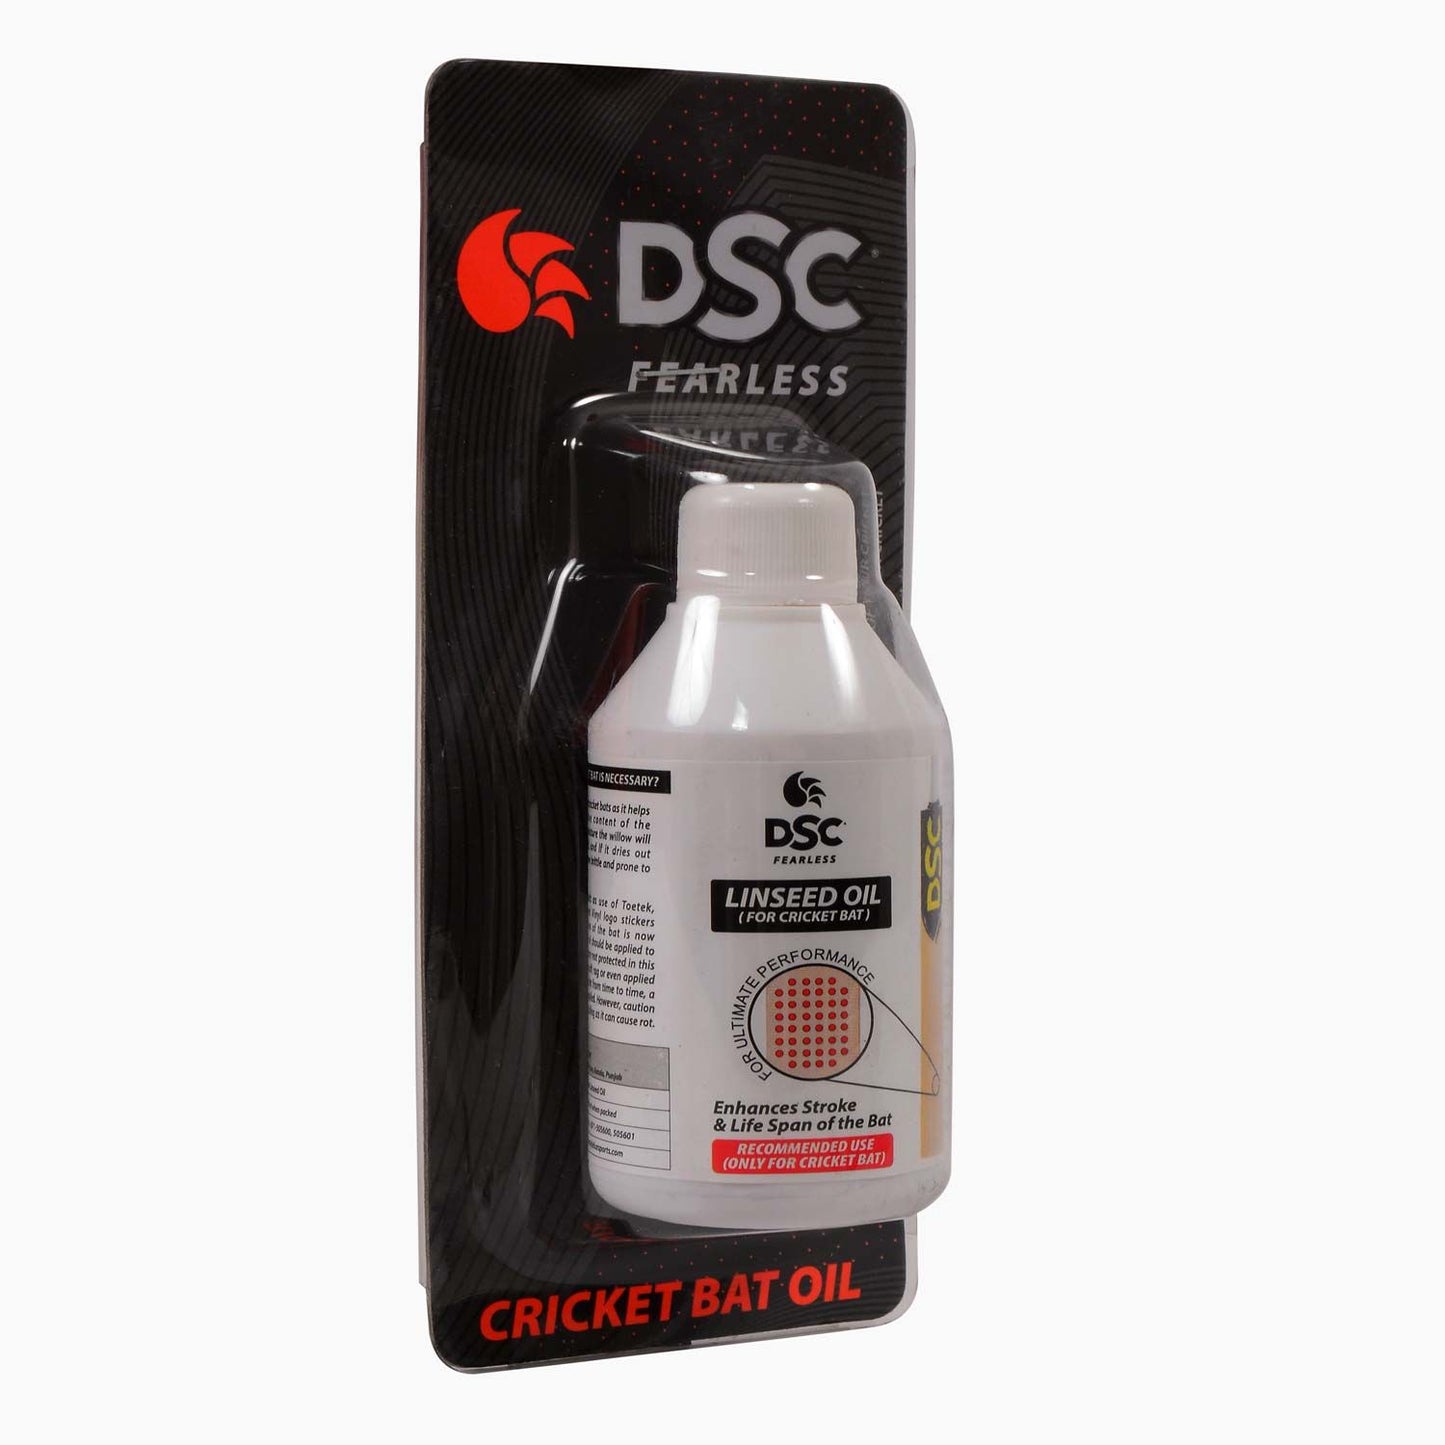 DSC CRICKET BAT OIL